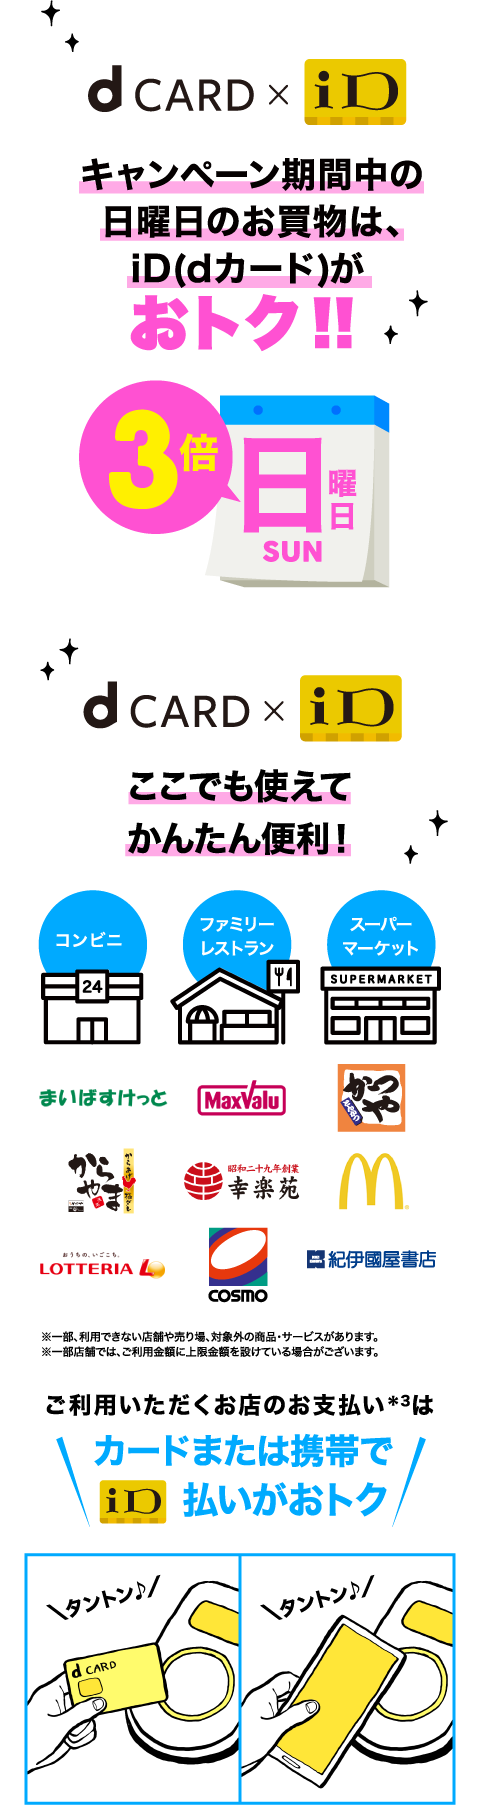 dCARD×iDキャンペーン期間中の日曜日のお買物は、iD（dカード）がおトク！！